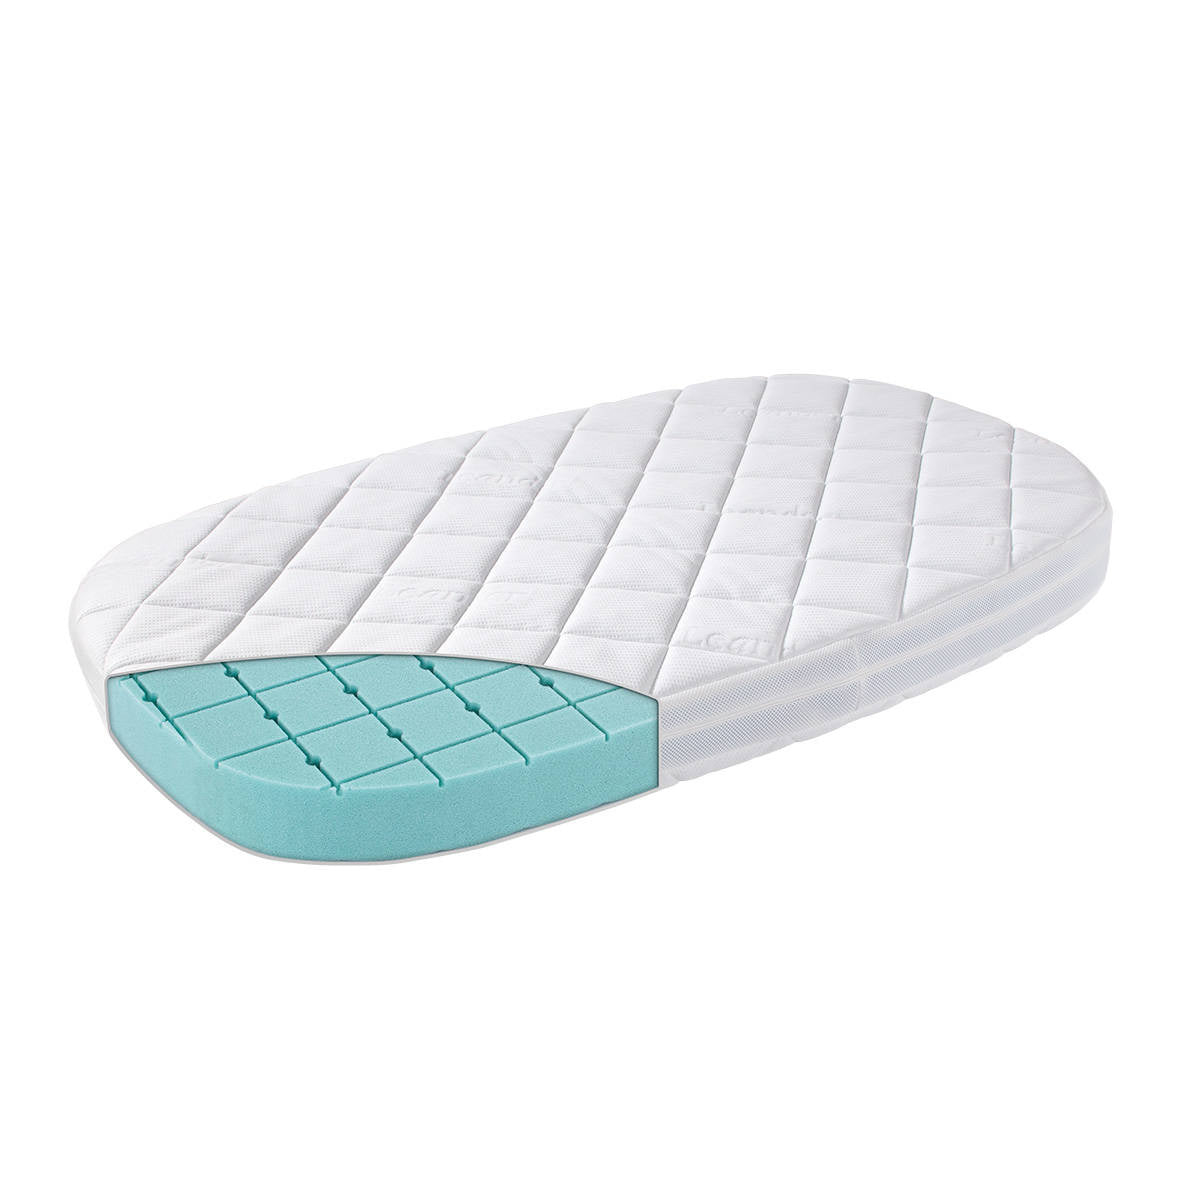 Materac do łóżeczka Leander CLASSIC Baby Premium 120x60, oddychający, elastyczny, antyalergiczny, dla zdrowego snu dziecka.